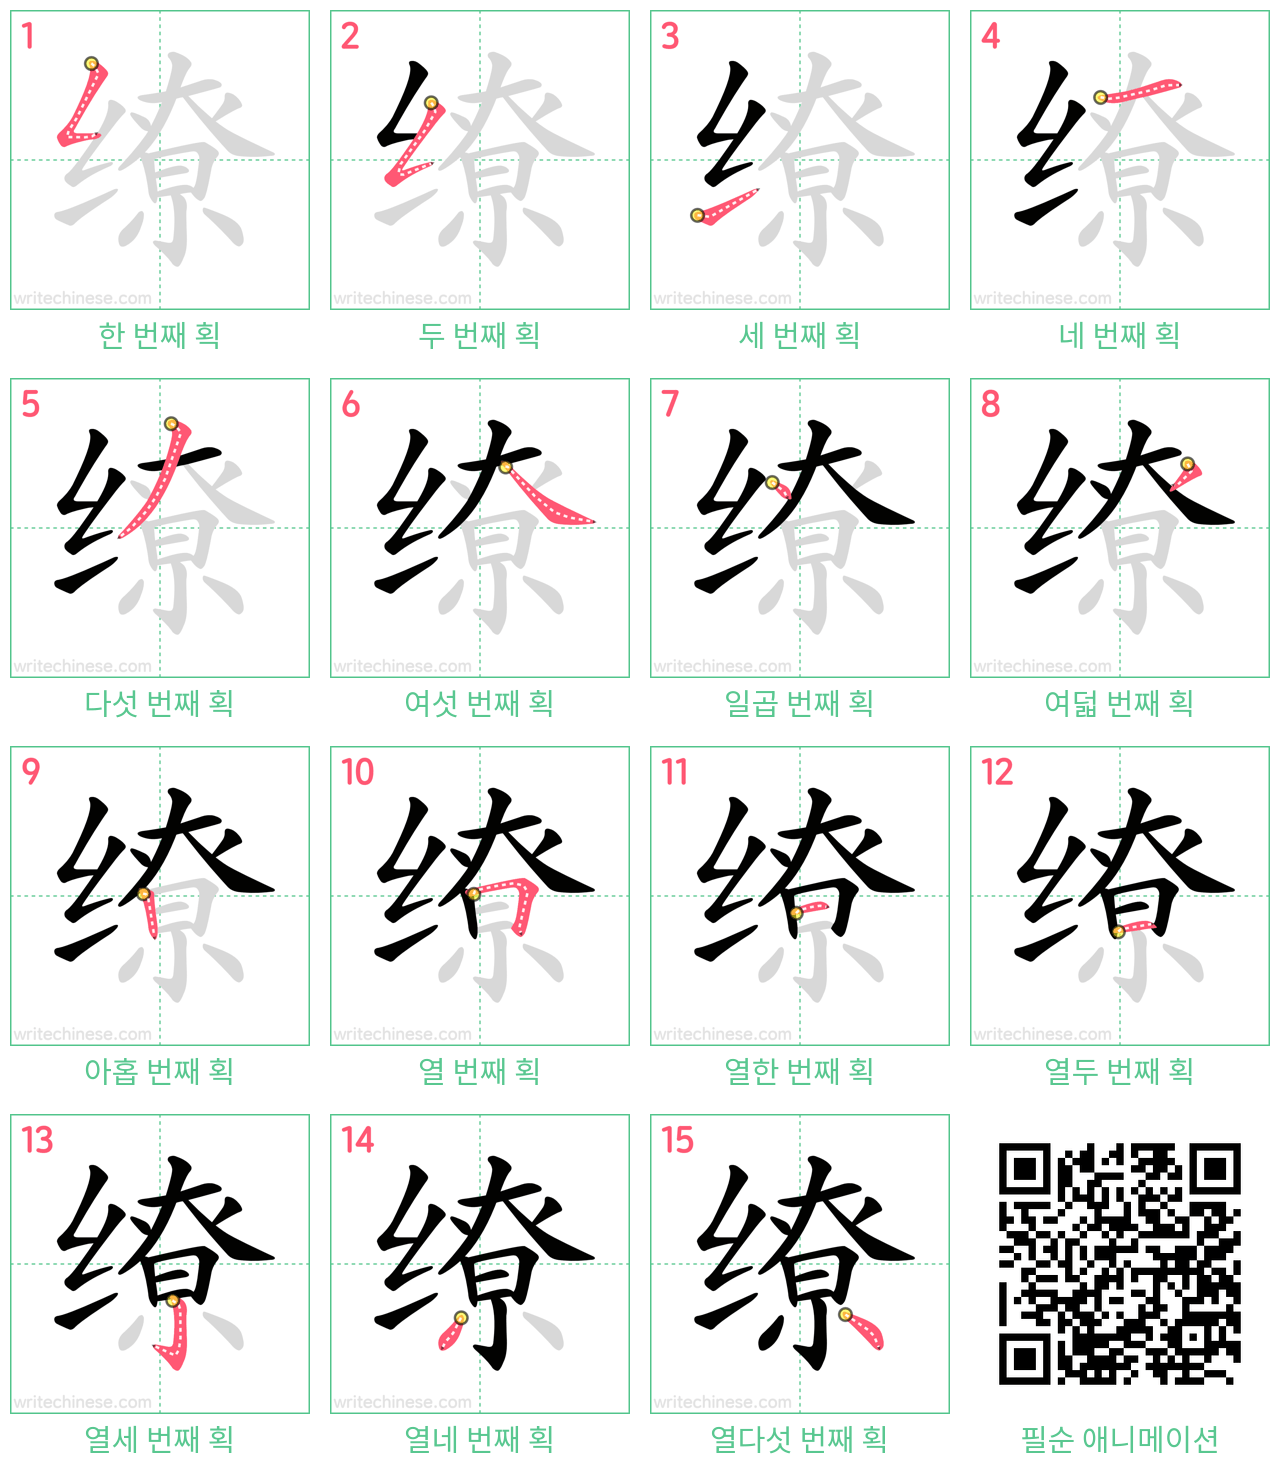 缭 step-by-step stroke order diagrams